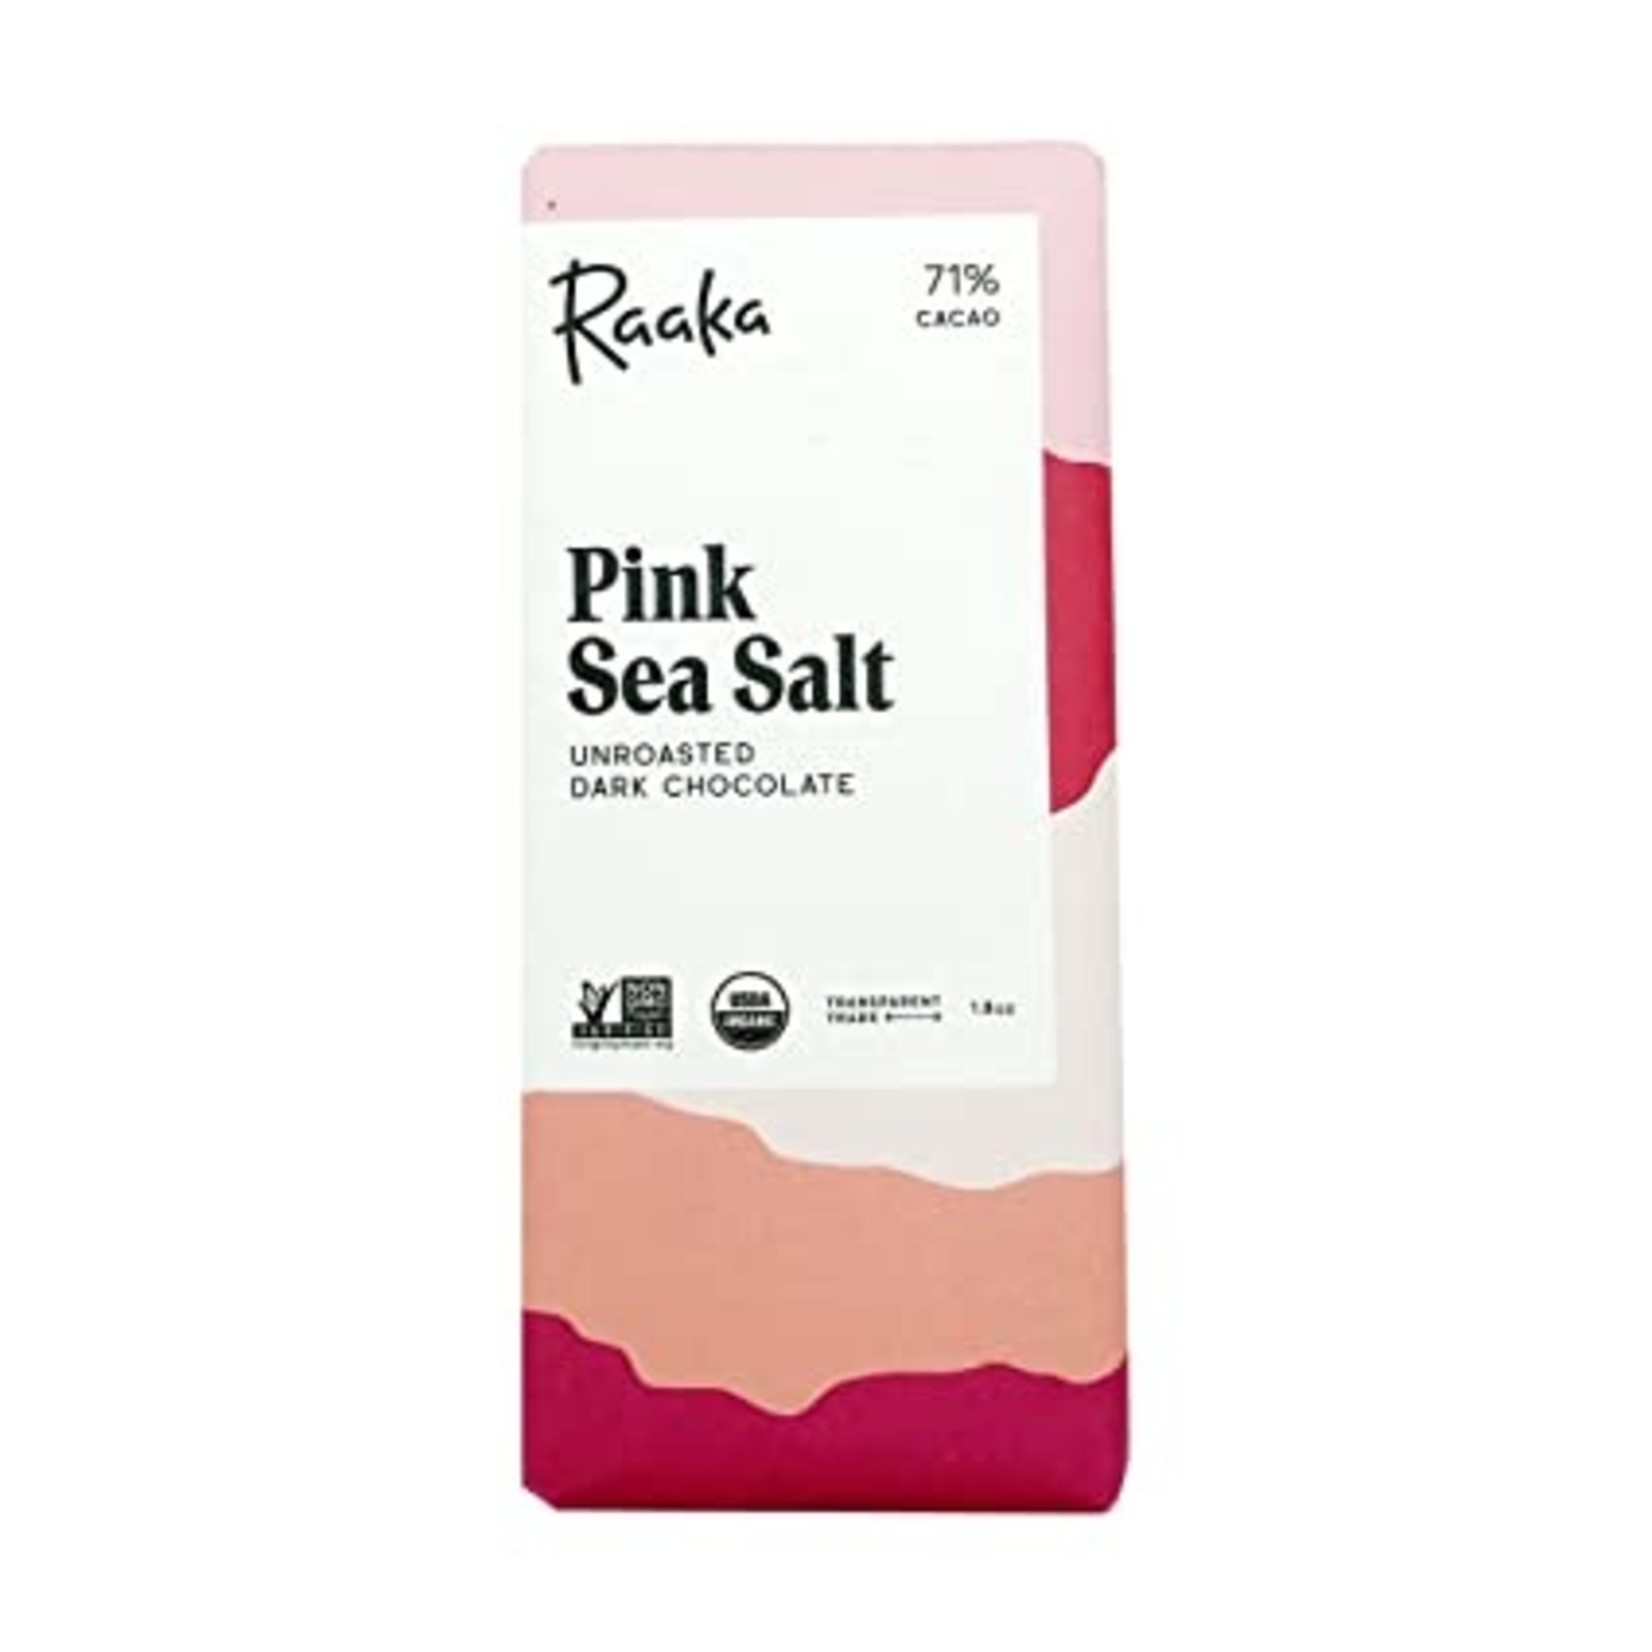 Raaka Pink Sea Salt Chocolate Bar